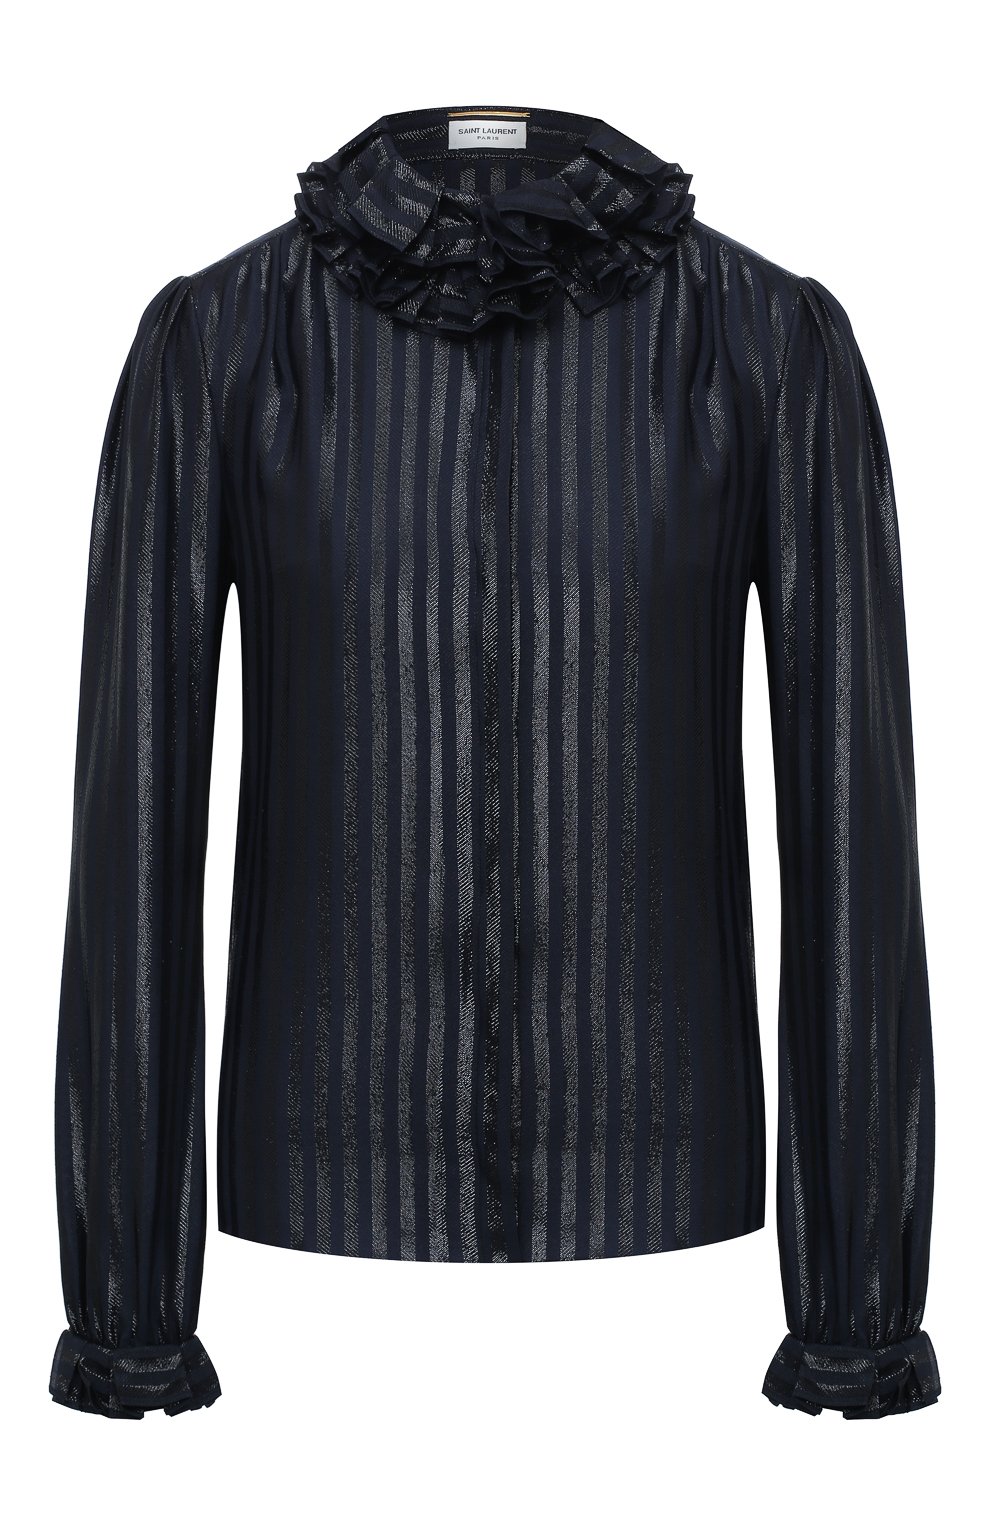 Блузы Saint Laurent, Шелковая блузка Saint Laurent, Франция, Синий, Шелк: 73%; Полиамид: 27%;, 11234129  - купить